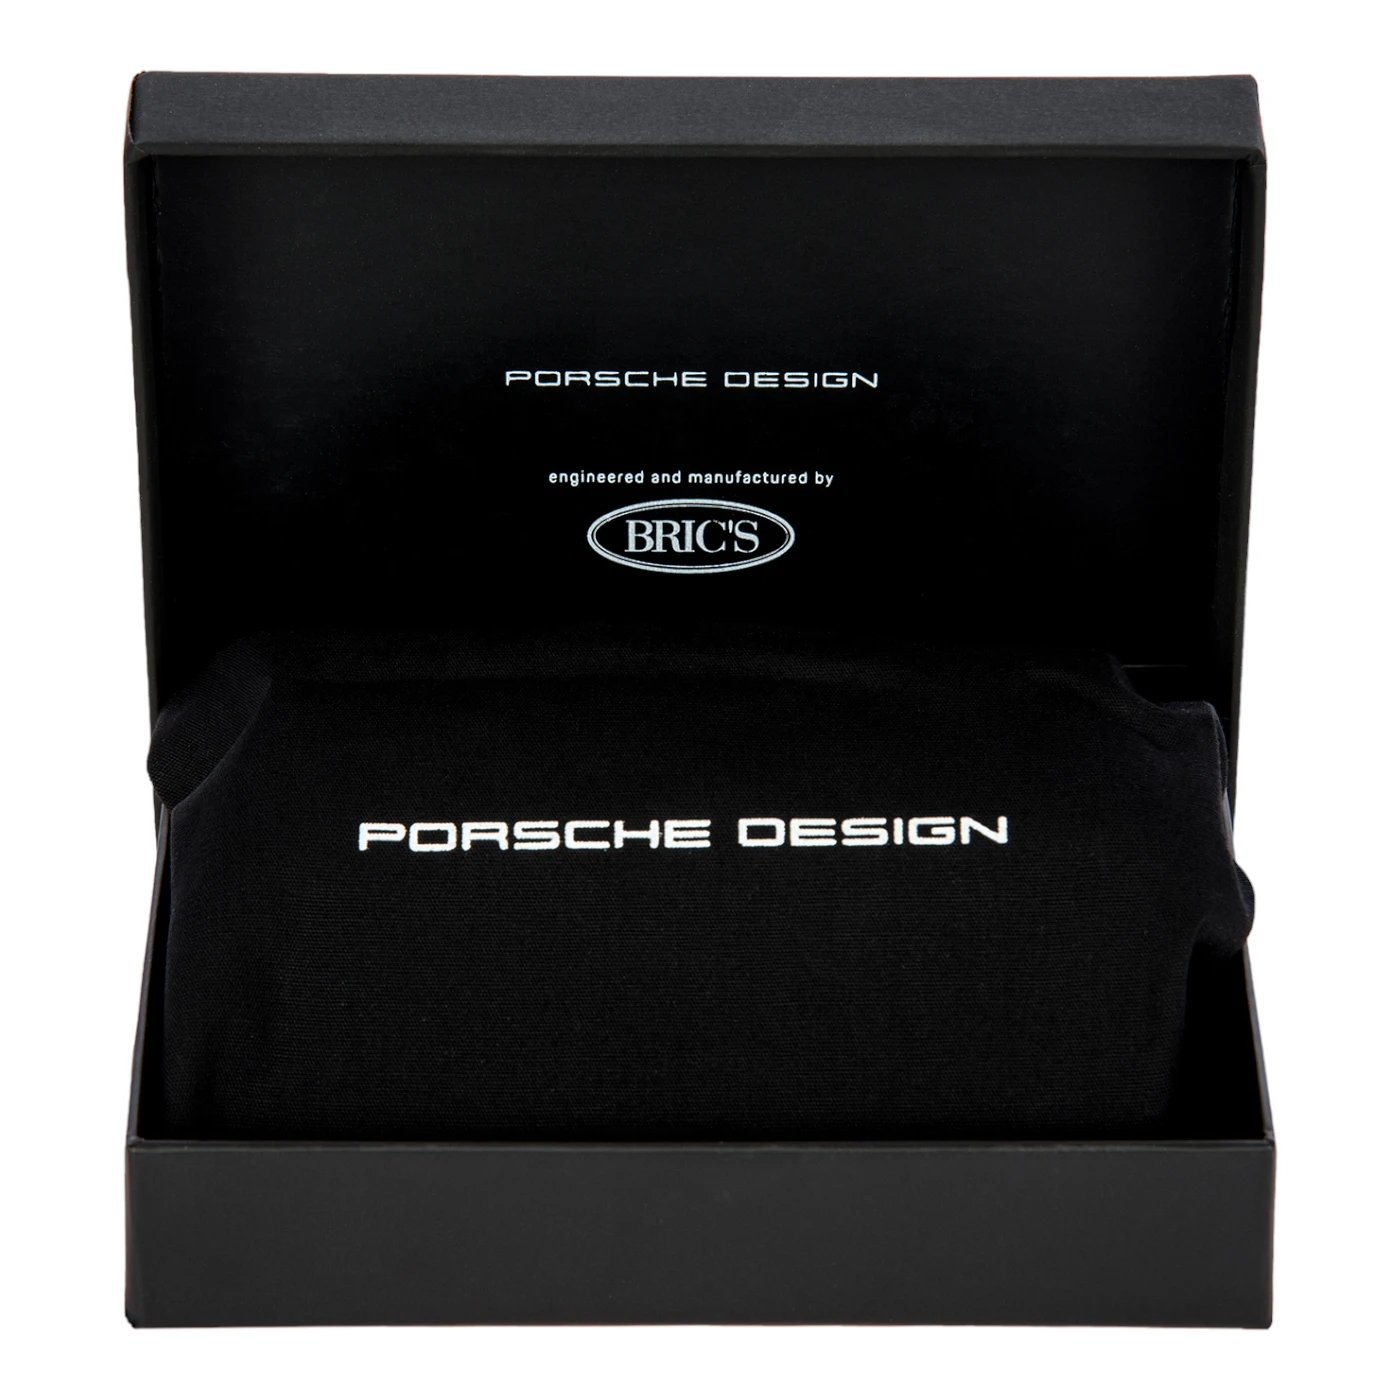 Porsche Design X Secrid Cardholder - dark blue